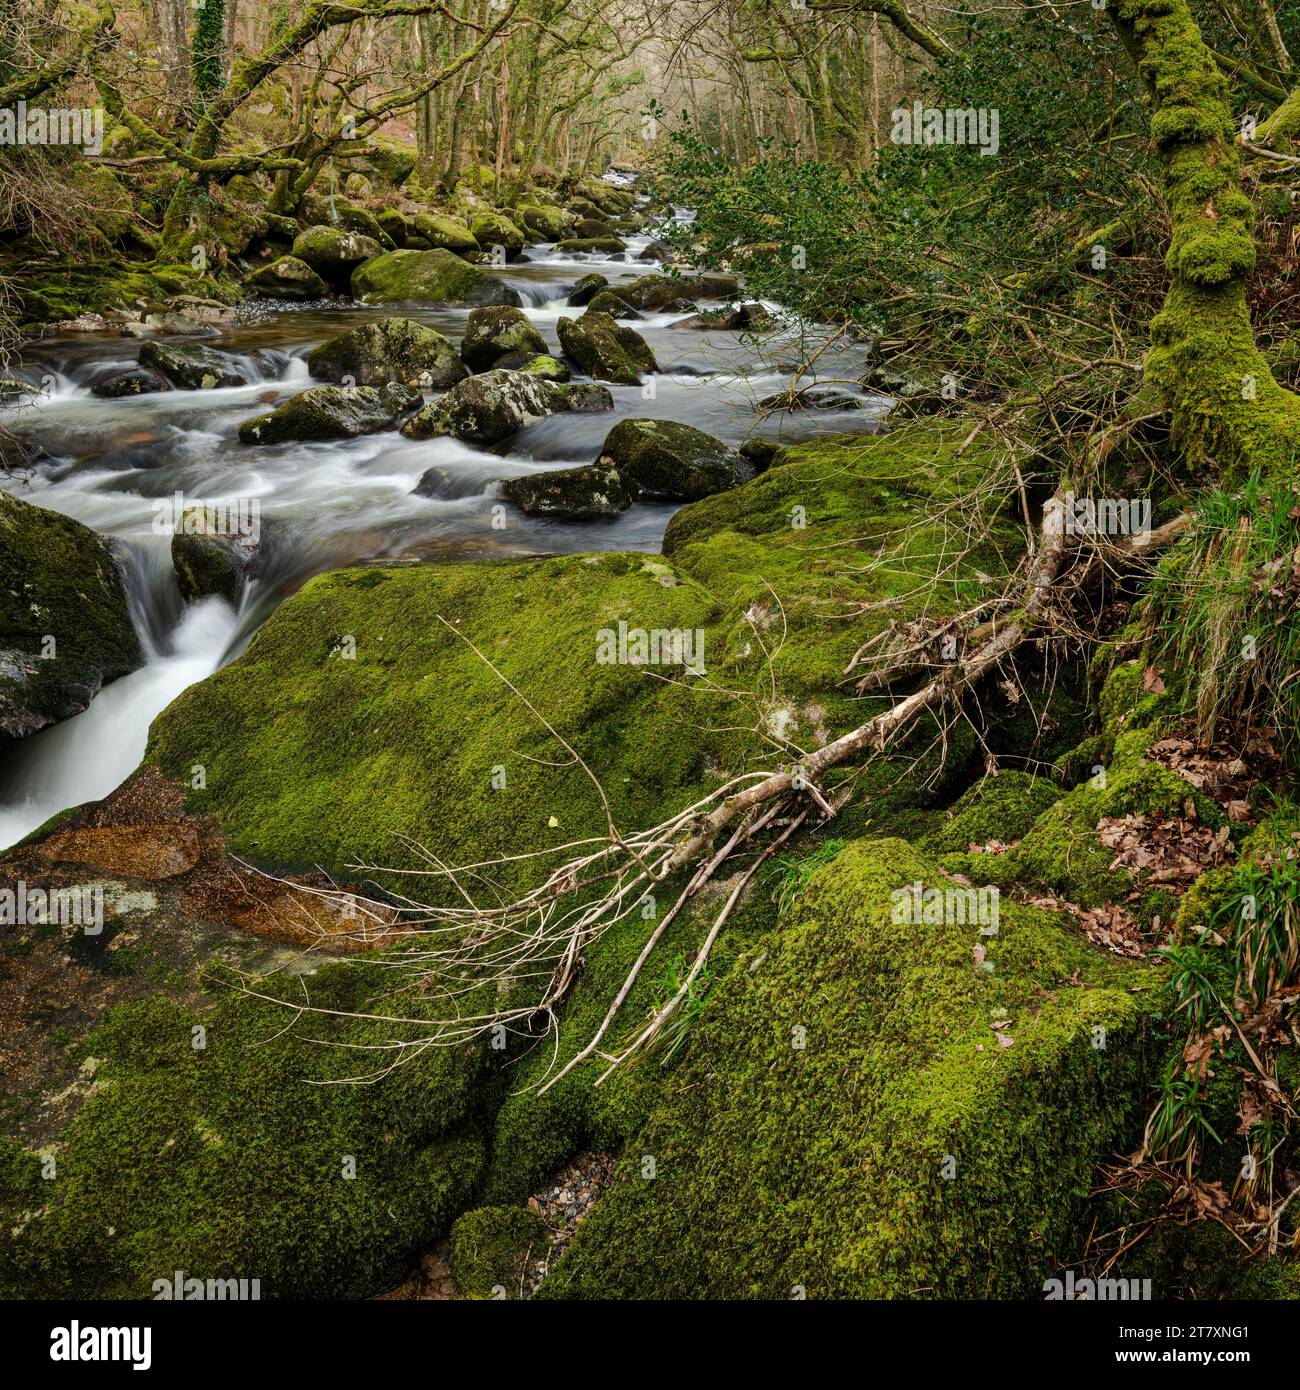 Moosbedeckte Felsbrocken und Bäume entlang des Flusses Plym, Dewerstone, Dartmoor National Park, Devon, England, Vereinigtes Königreich, Europa Stockfoto